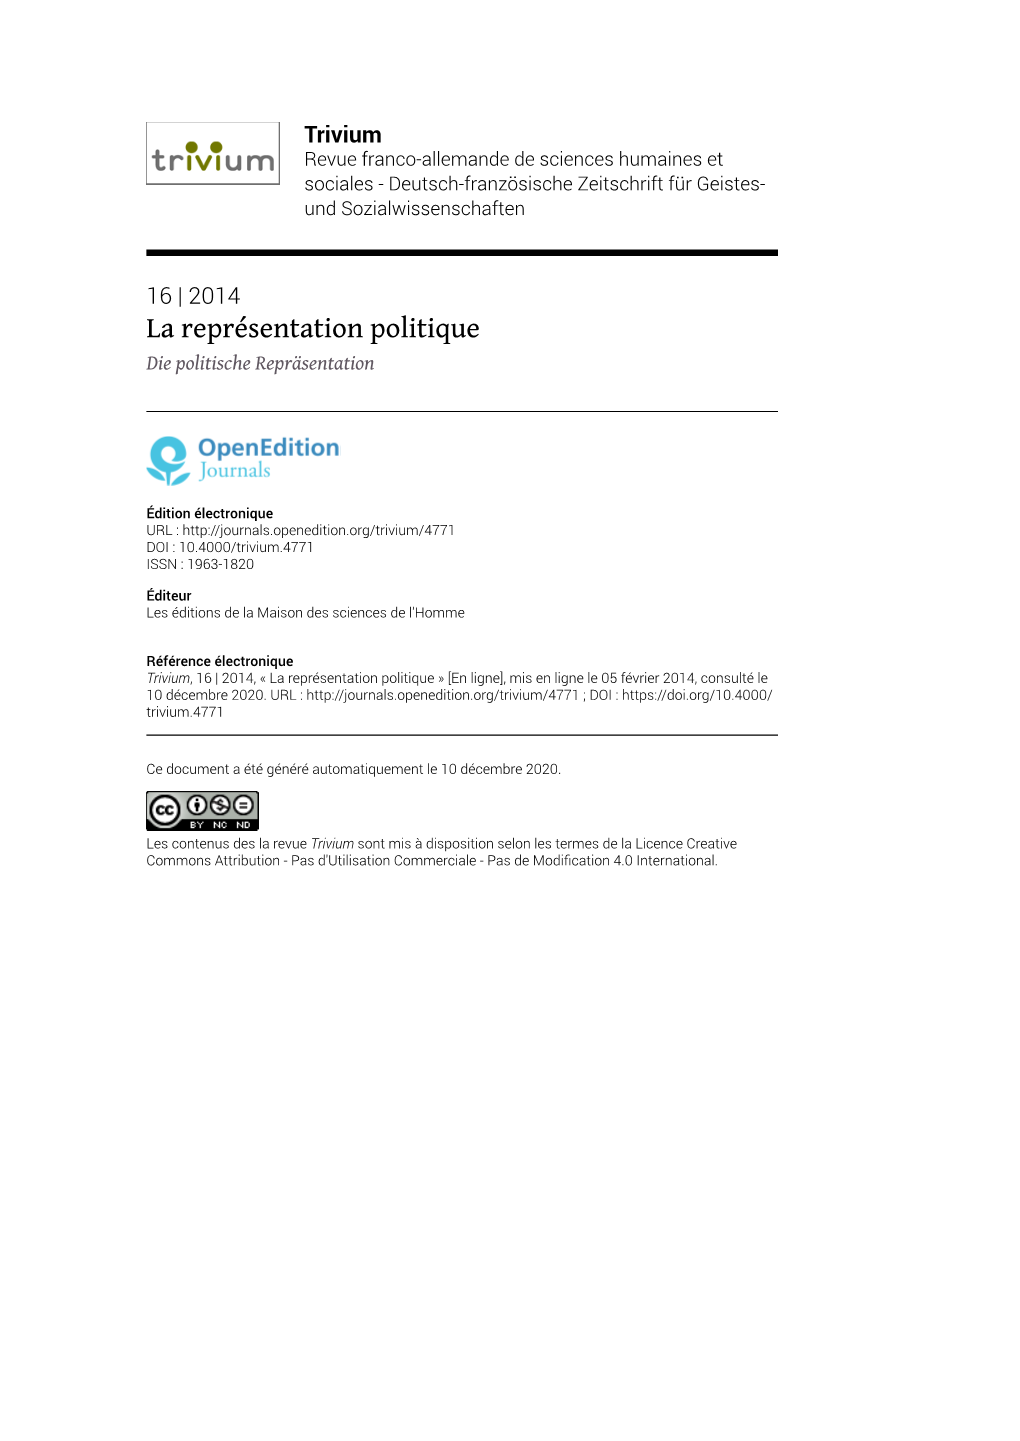 Trivium, 16 | 2014, « La Représentation Politique » [En Ligne], Mis En Ligne Le 05 Février 2014, Consulté Le 10 Décembre 2020